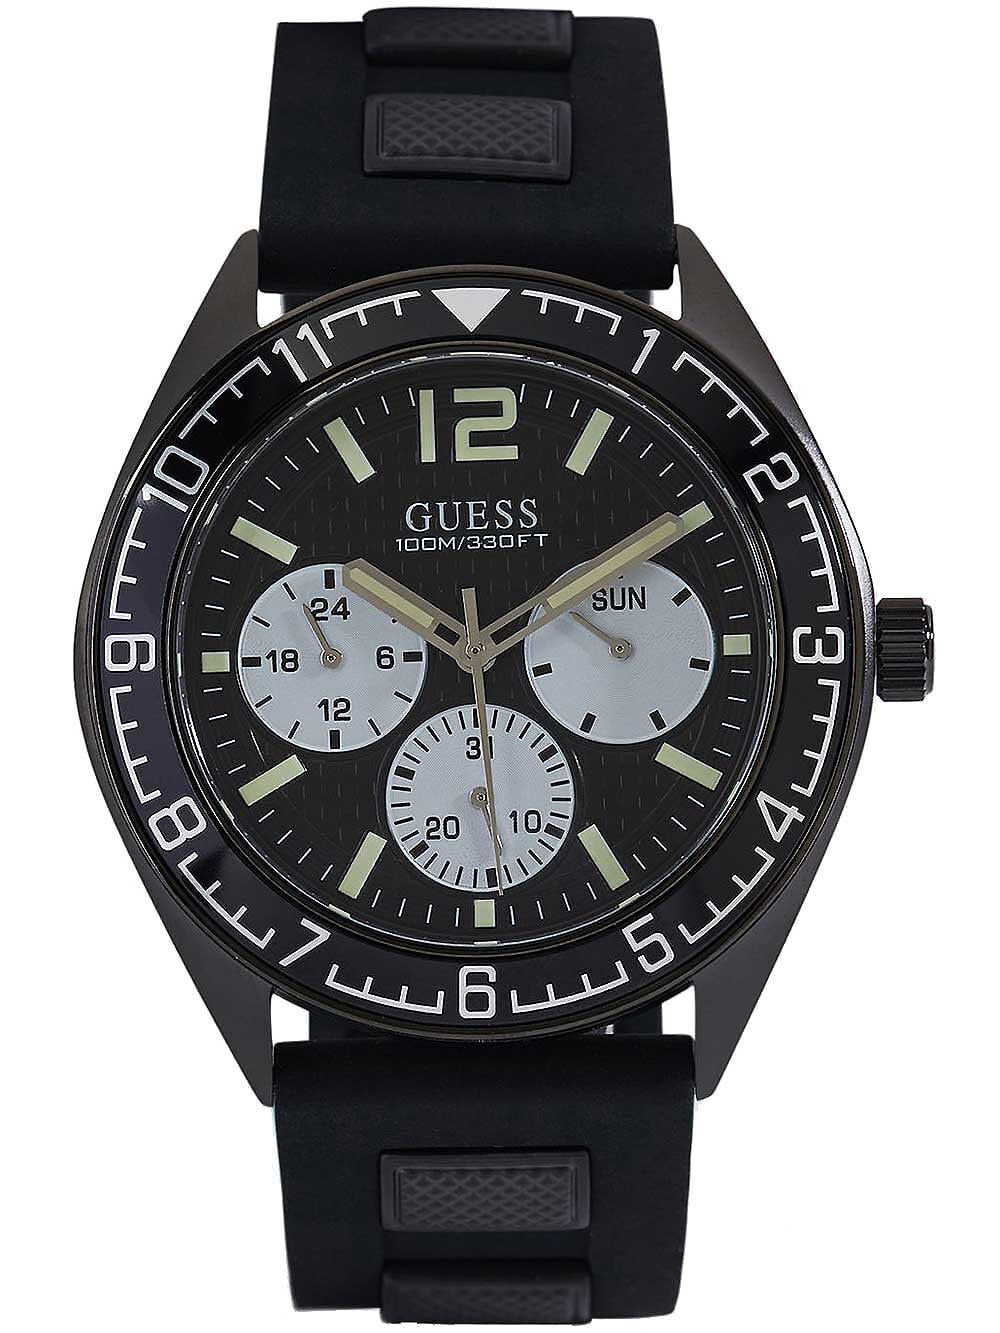 Мужские наручные часы с черным силиконовым ремешком Guess W1167G2 Pacific mens 46mm 10ATM